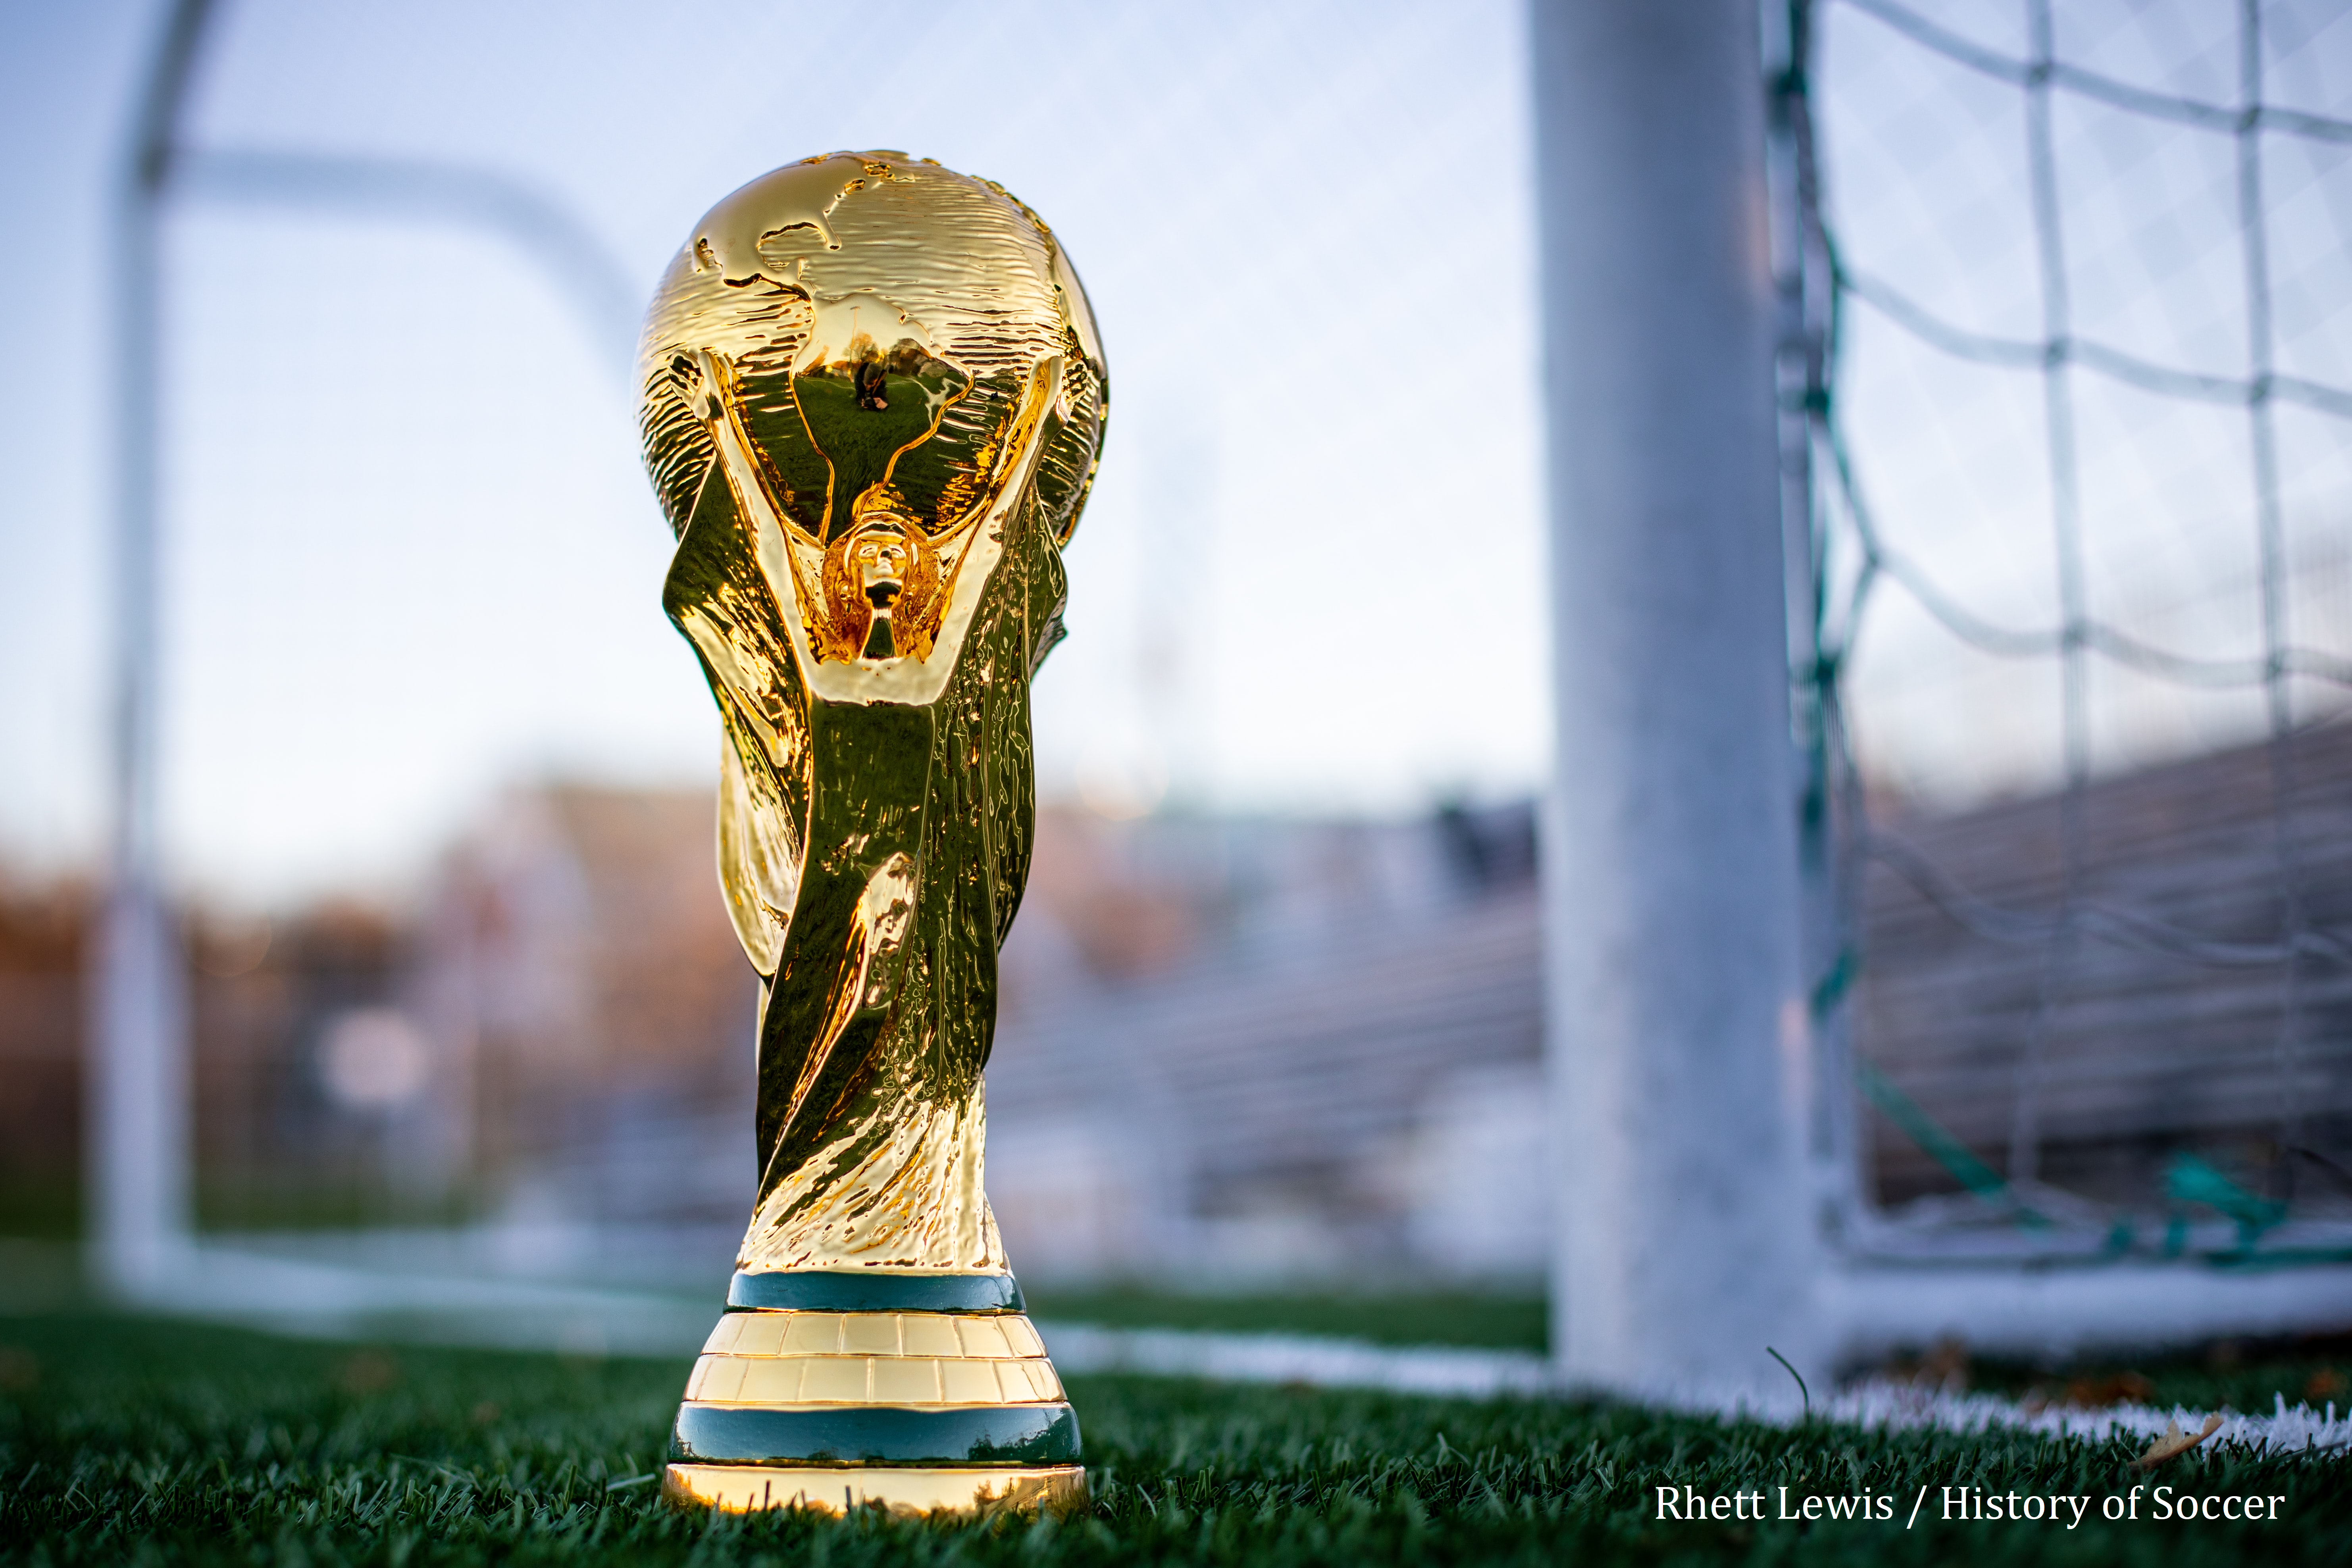 Photo By Rhett Lewis / Soccer History Coupe du monde posé sur gazon de stade de football, à l'arrière on peut voir la cage de but